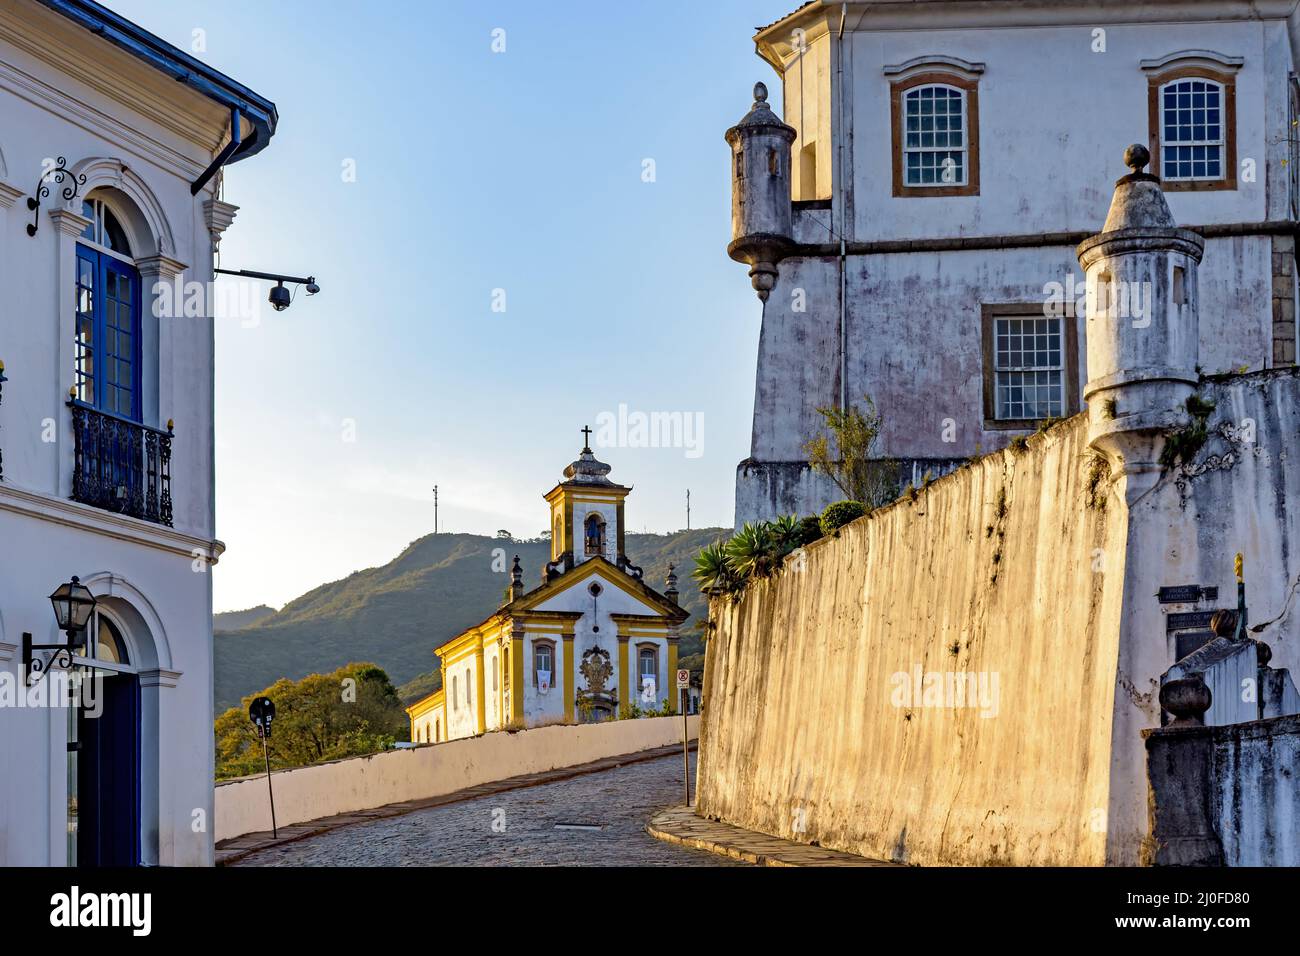 Arrivée dans le centre historique d'Ouro Preto avec des bâtiments de style colonial Banque D'Images